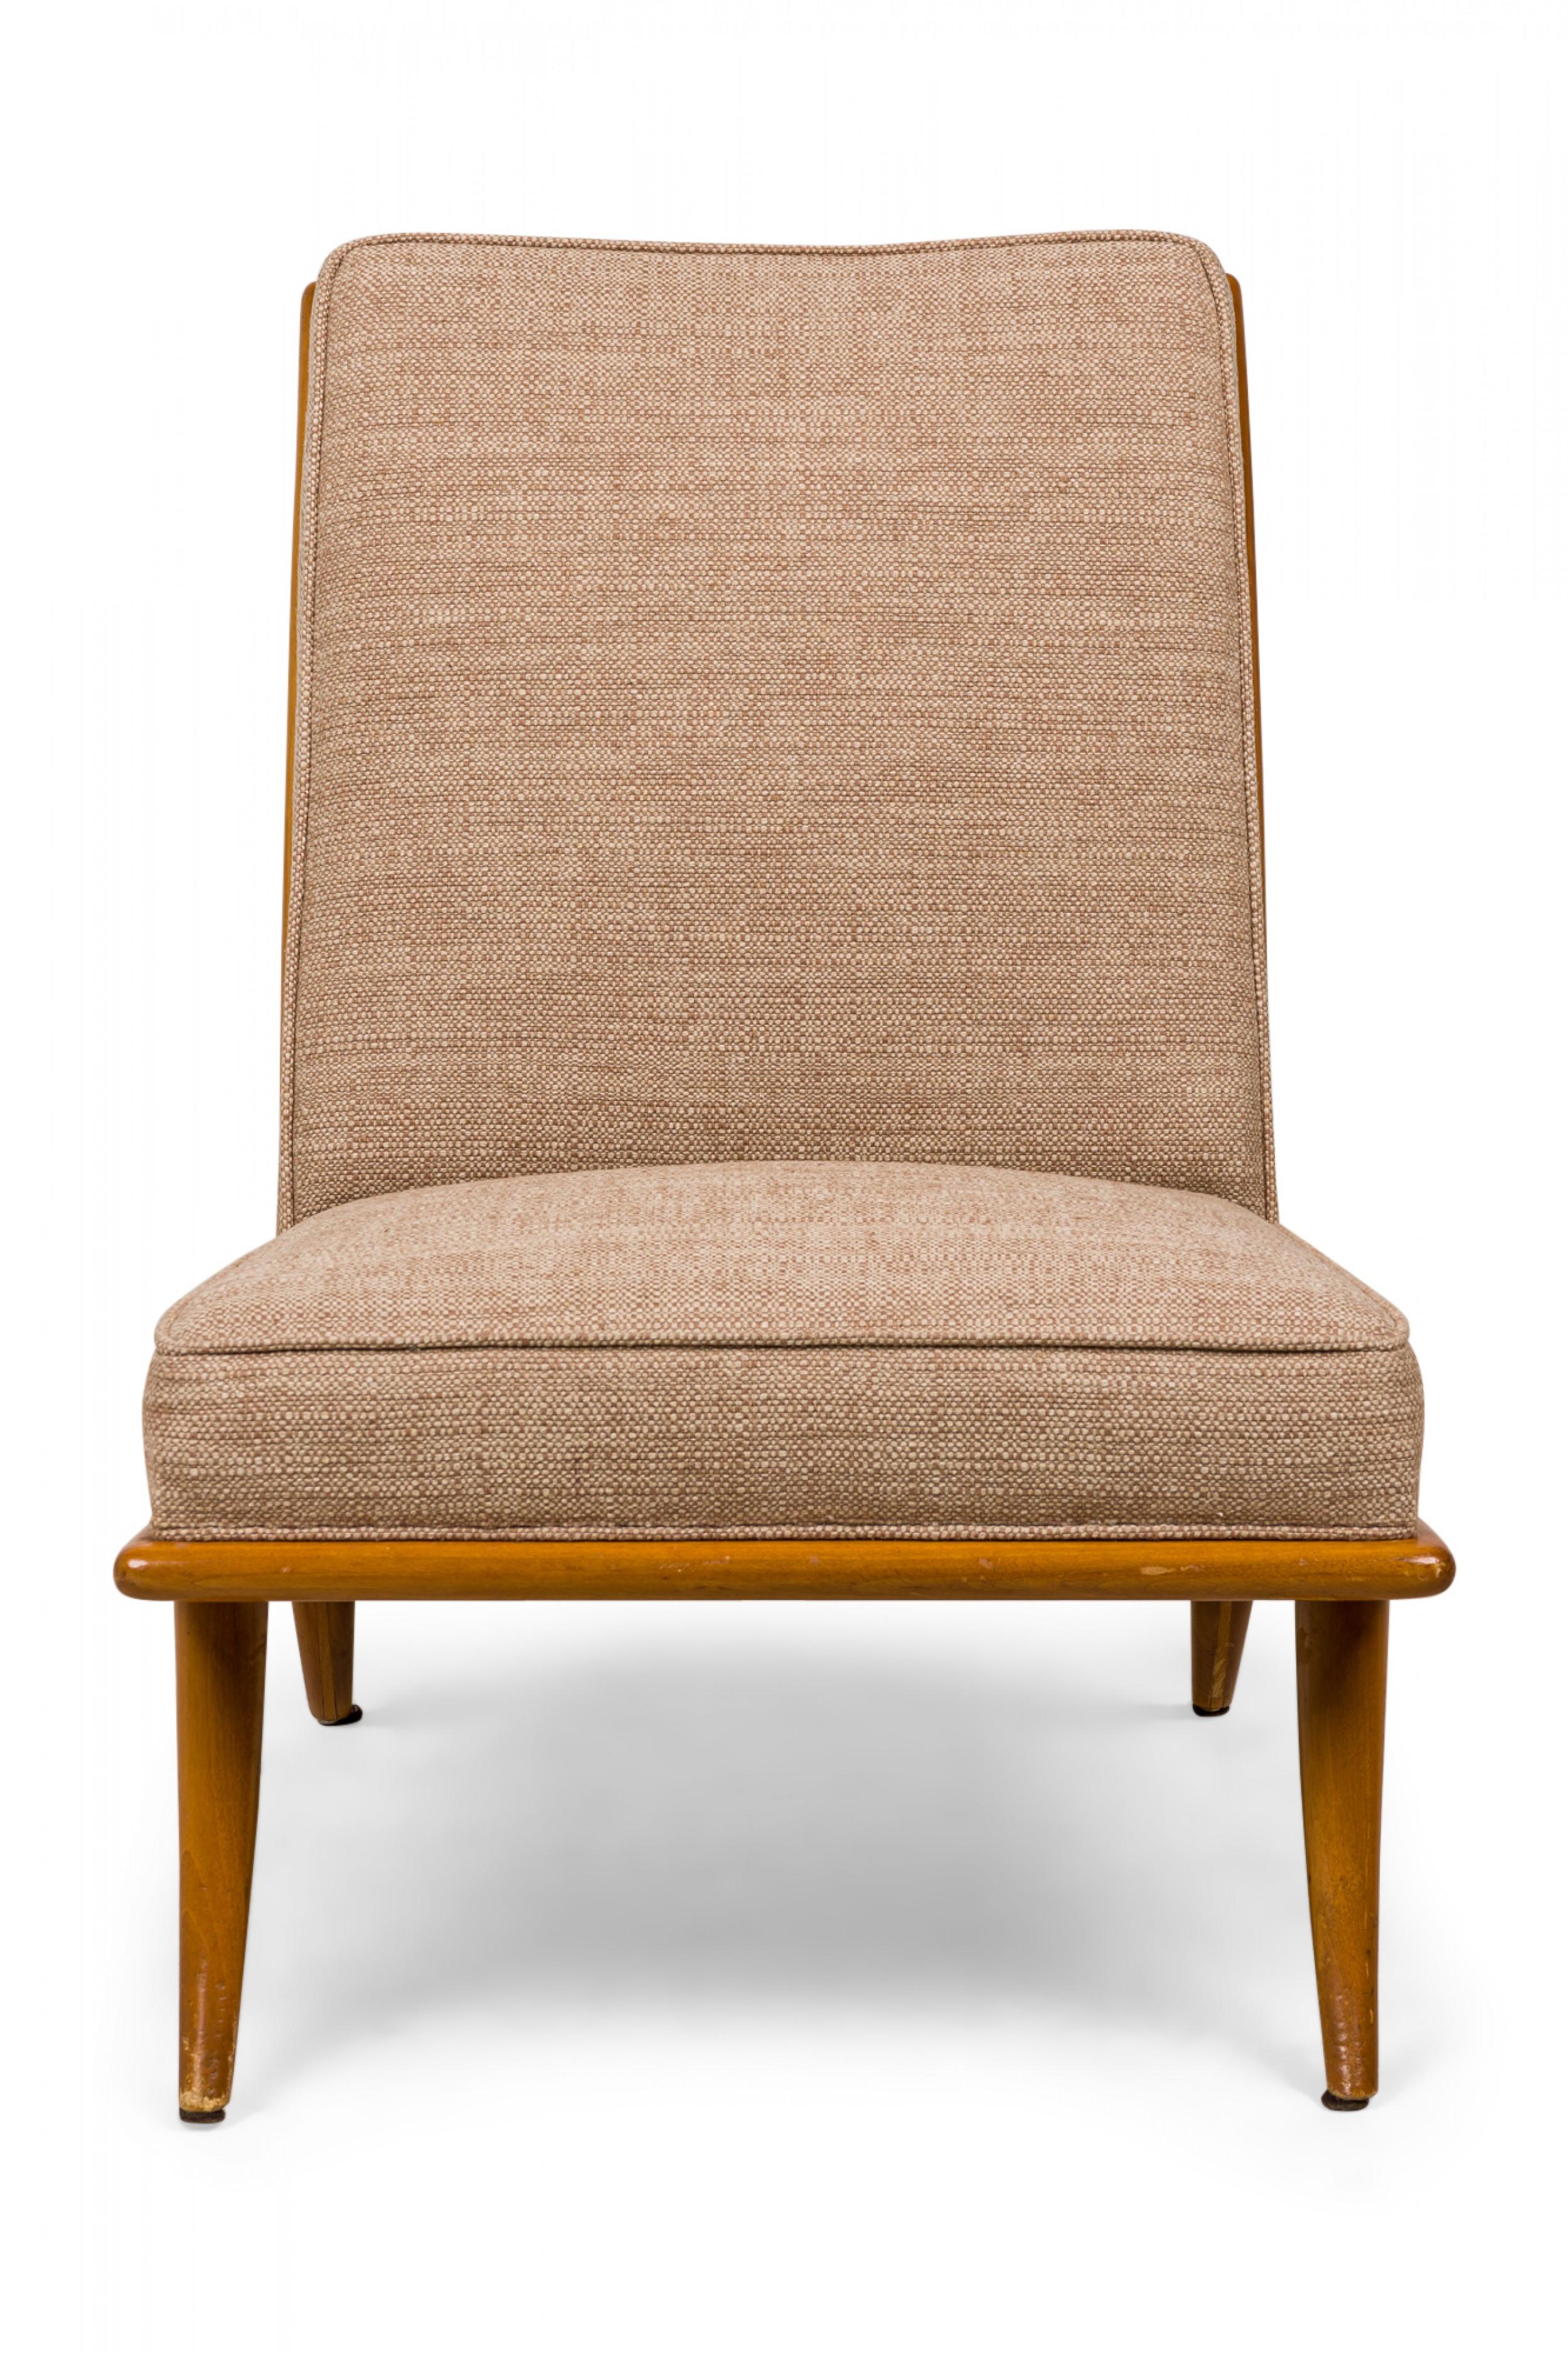 Chaise d'appoint du milieu du siècle, tapissée d'un tissu beige texturé, avec une structure en noyer reposant sur quatre pieds légèrement incurvés et effilés. (T.H. ROBSJOHN-GIBBINGS POUR WIDDICOMB)(Pièces similaires : DUF0544, DUF0546)
